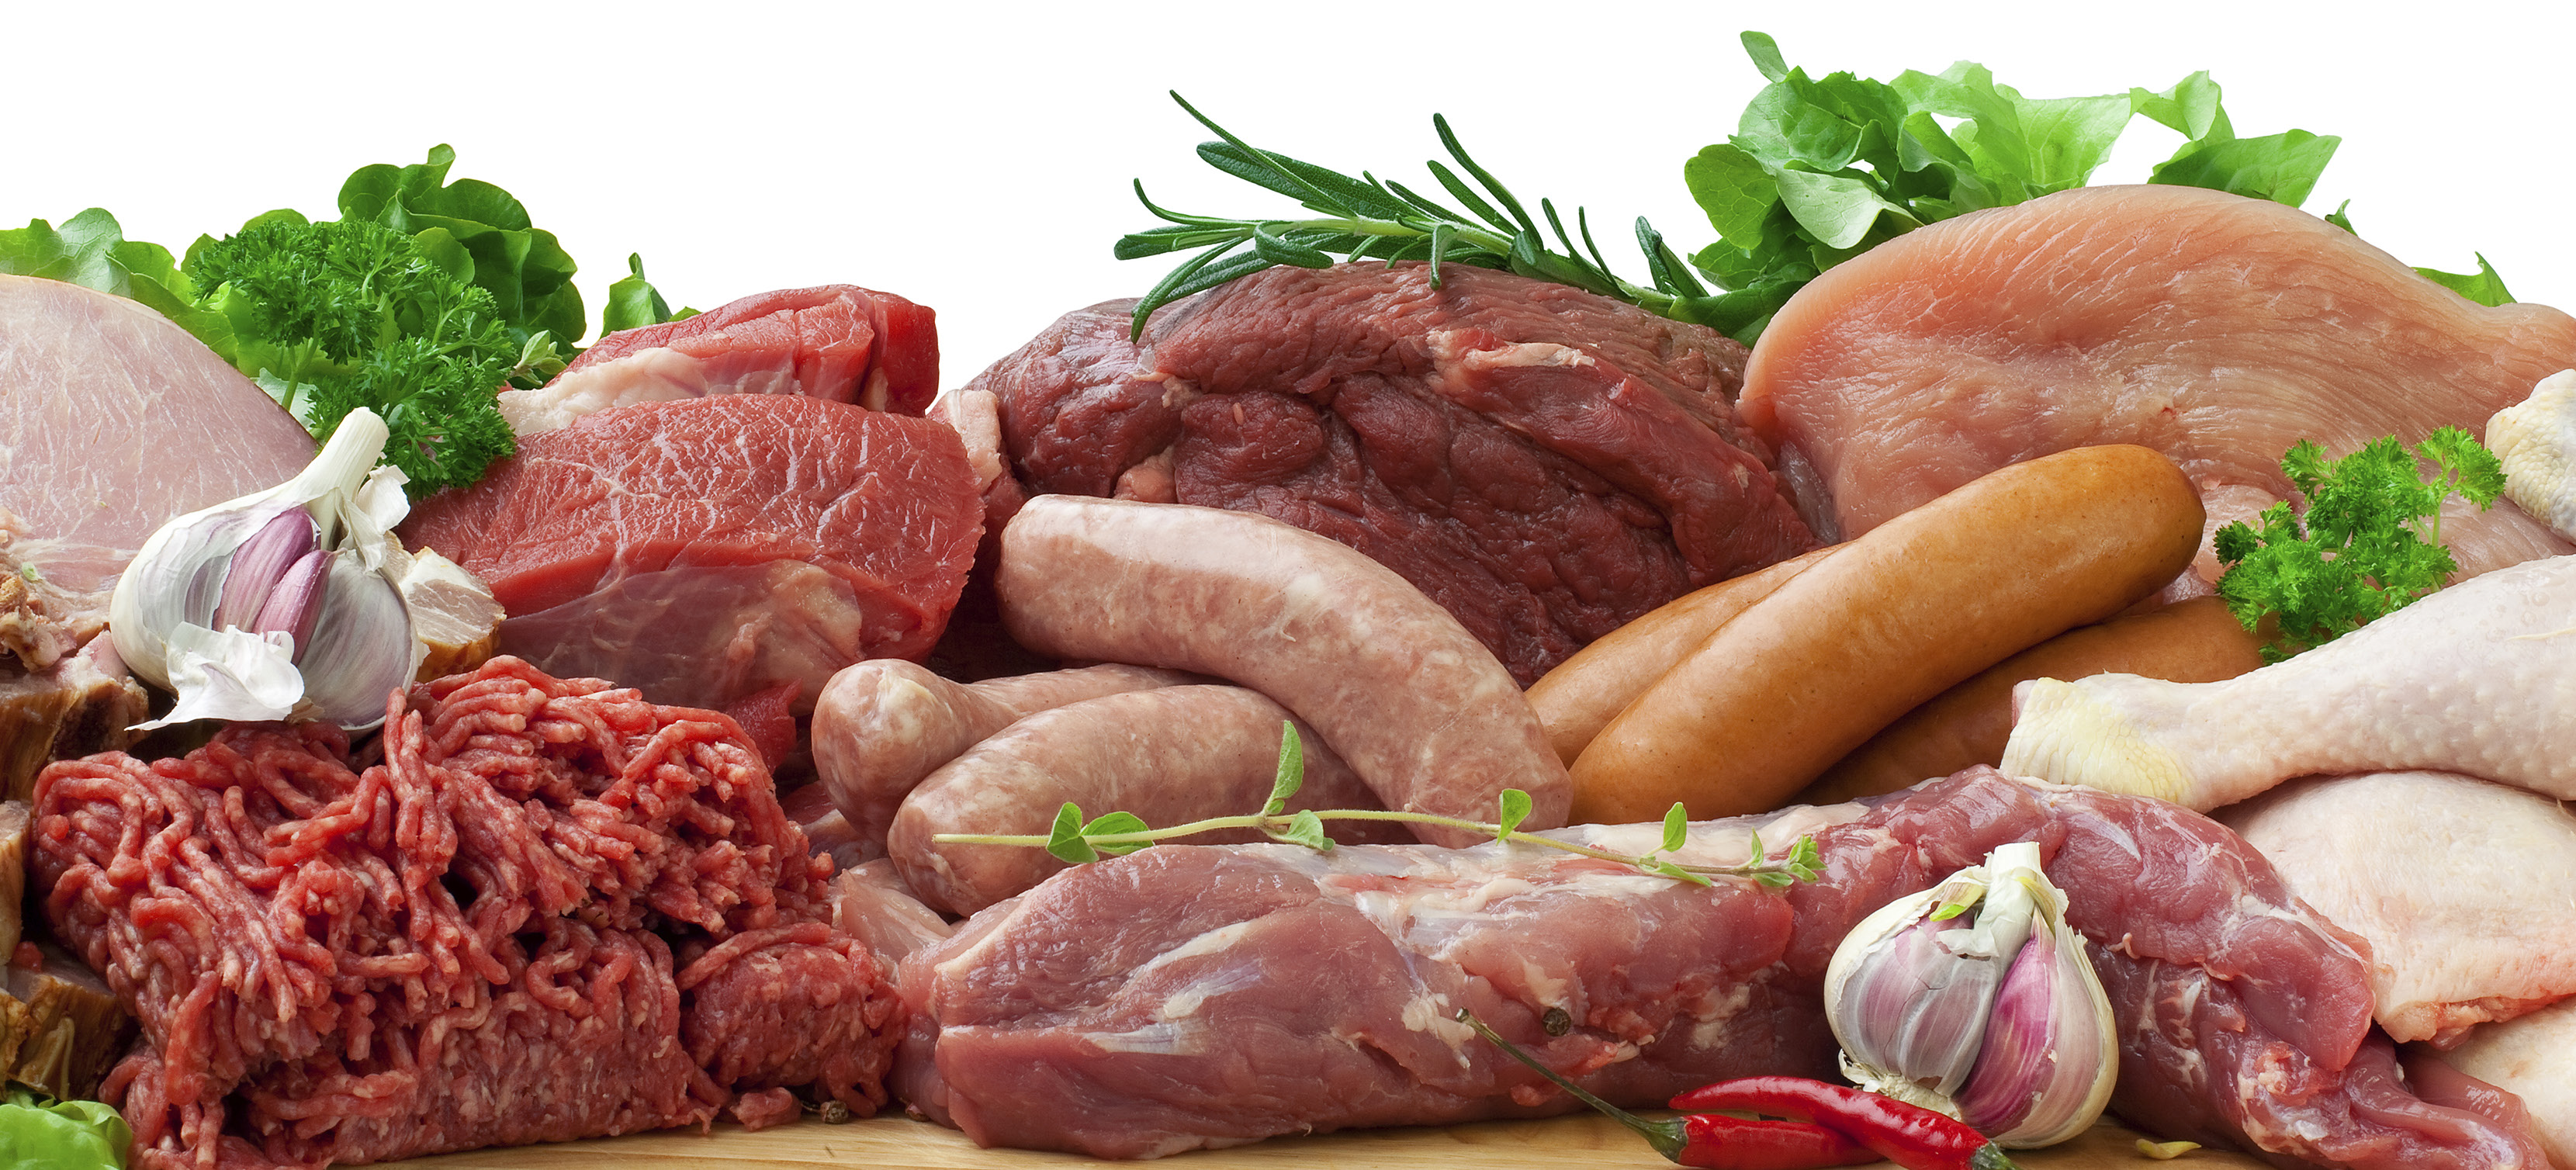 Freshline -technologieën voor vleesverwerking